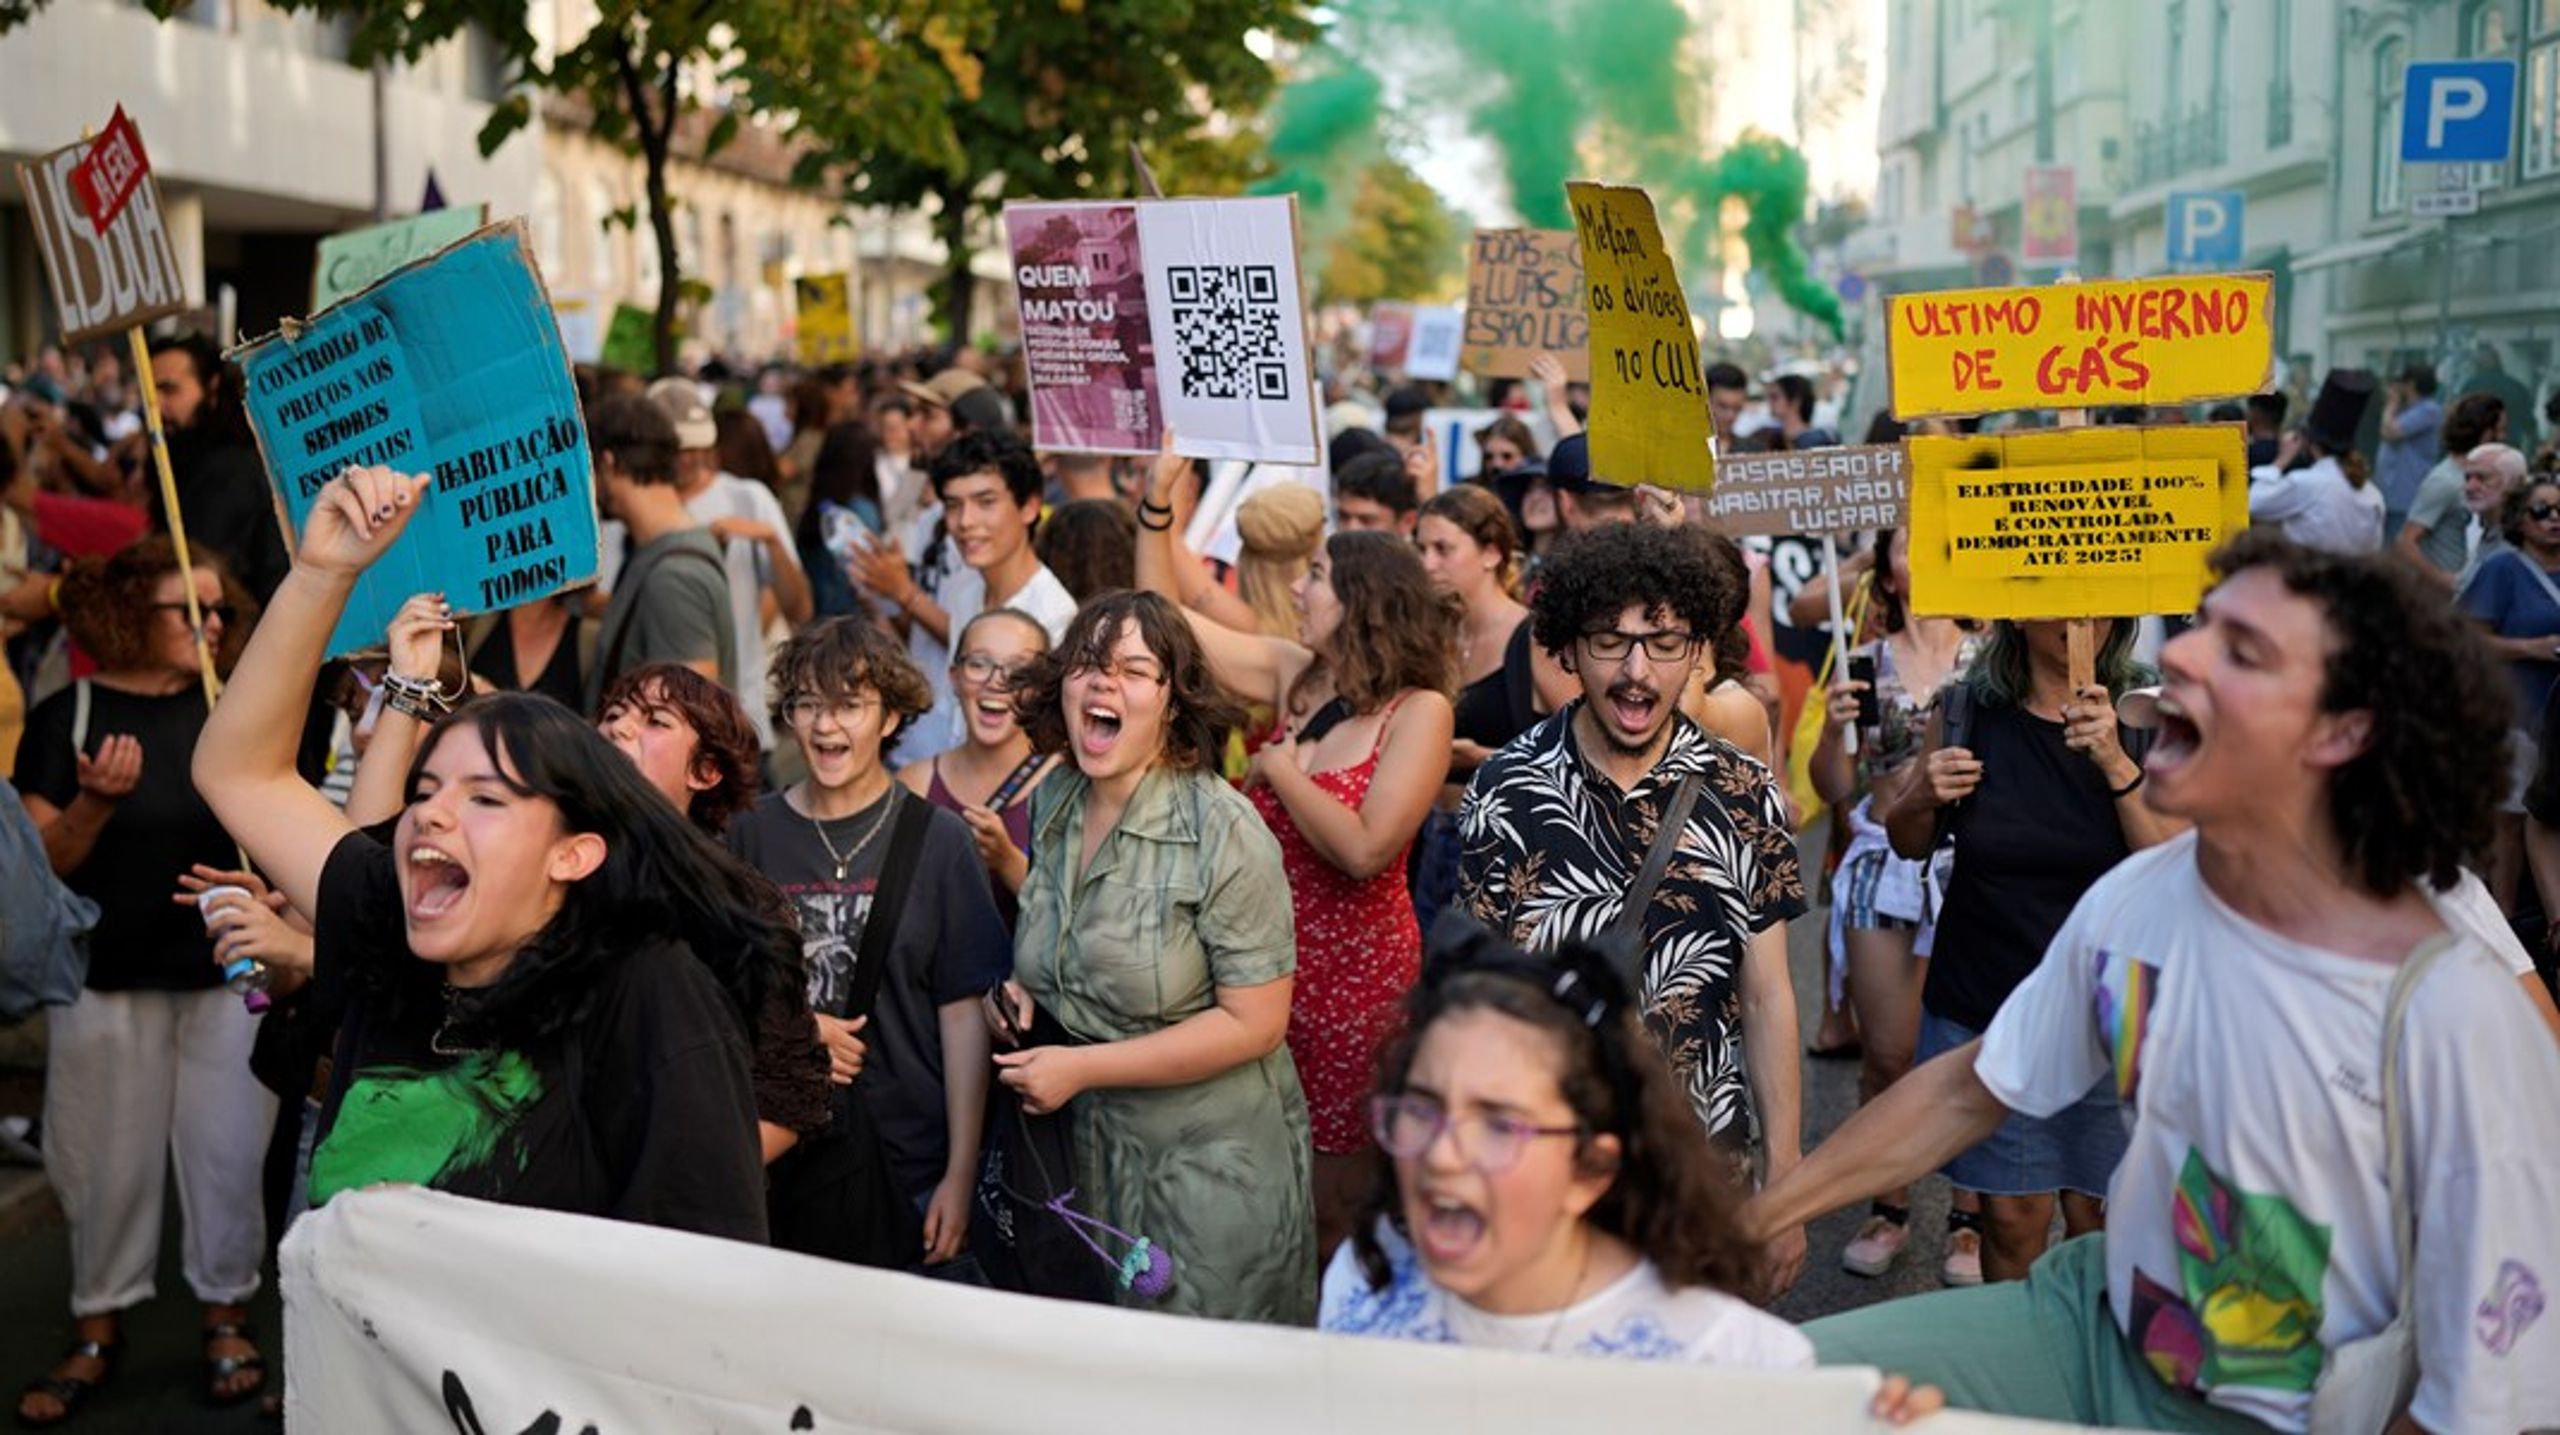 Lissabon är en av de städer där människor de senaste månaderna protesterat mot levnadsstandard och bristen på bostäder. Även i Dublin och Amsterdam är städer där liknande protester skett.&nbsp;<br>